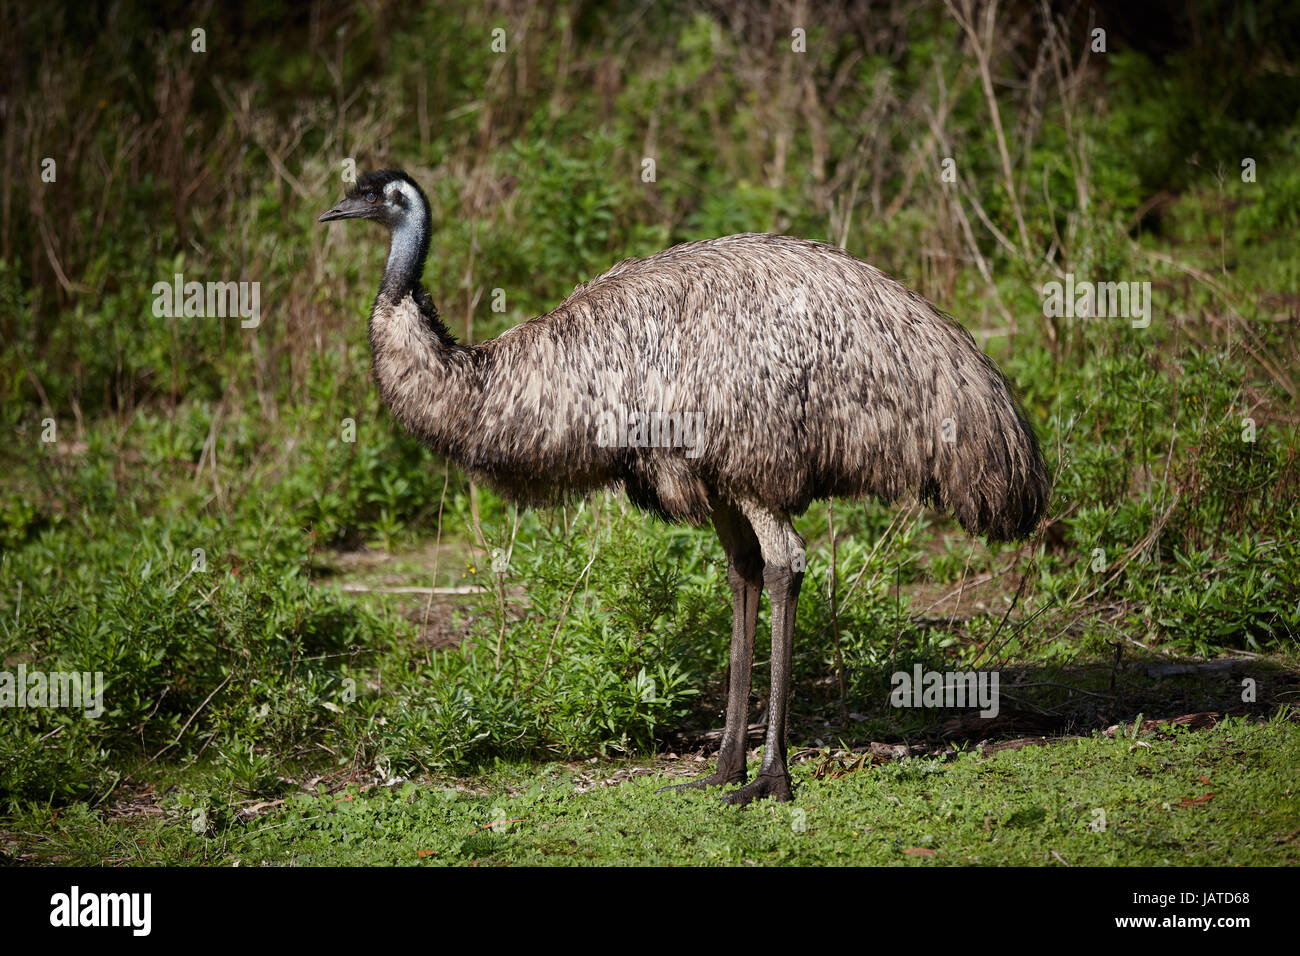 The Australian Emu, is a large flightless bird often seen grazing beside the roadside. Stock Photo